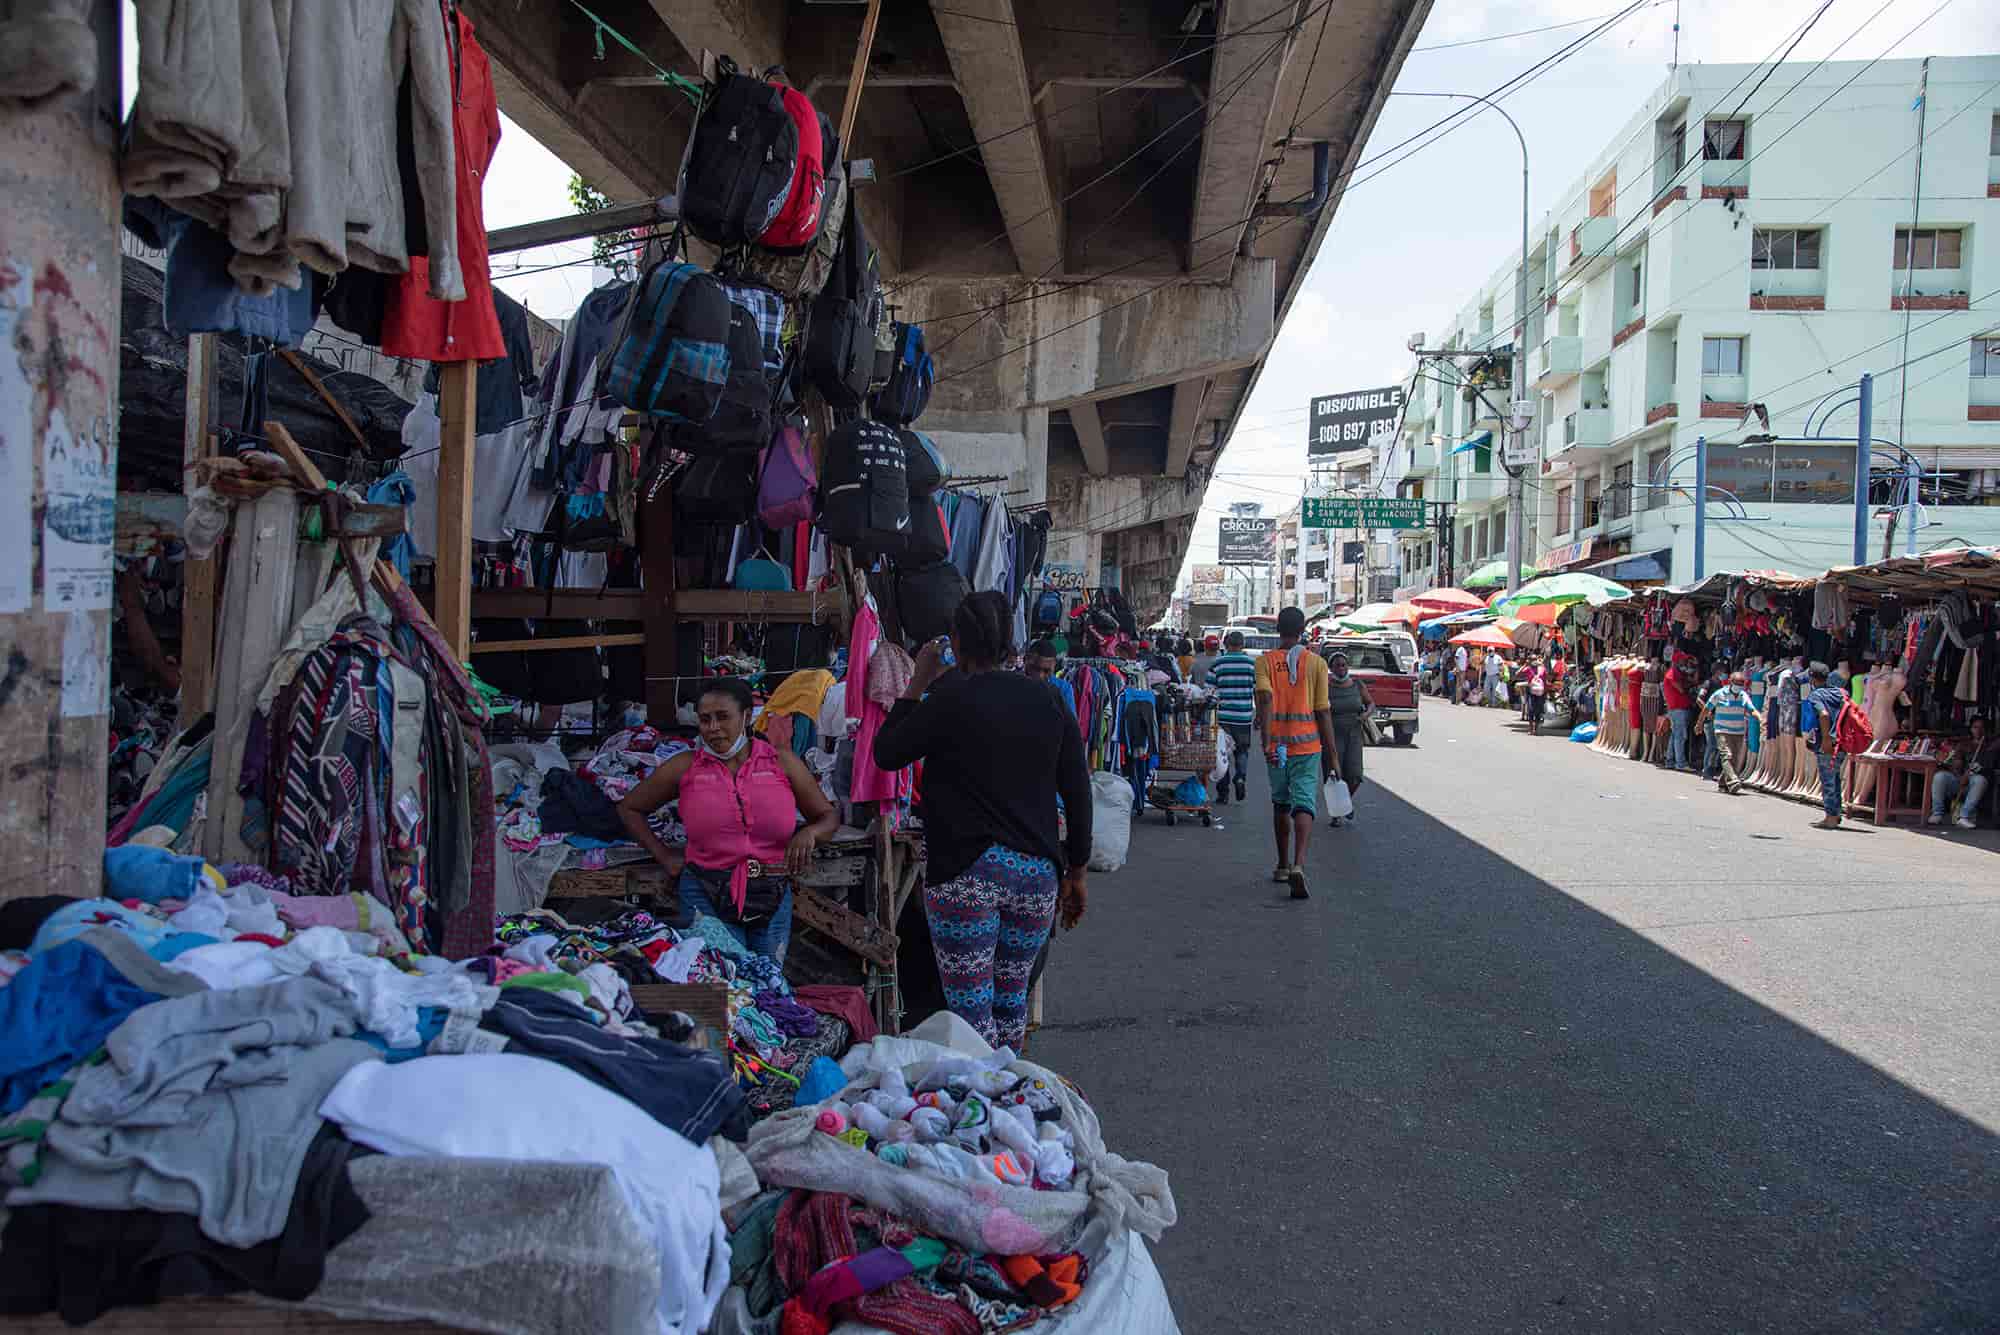 ARCHIVO - Vendedores informales ocupaban parte de la calle, dificultando el tránsito y creando un caos visual para los visitantes.